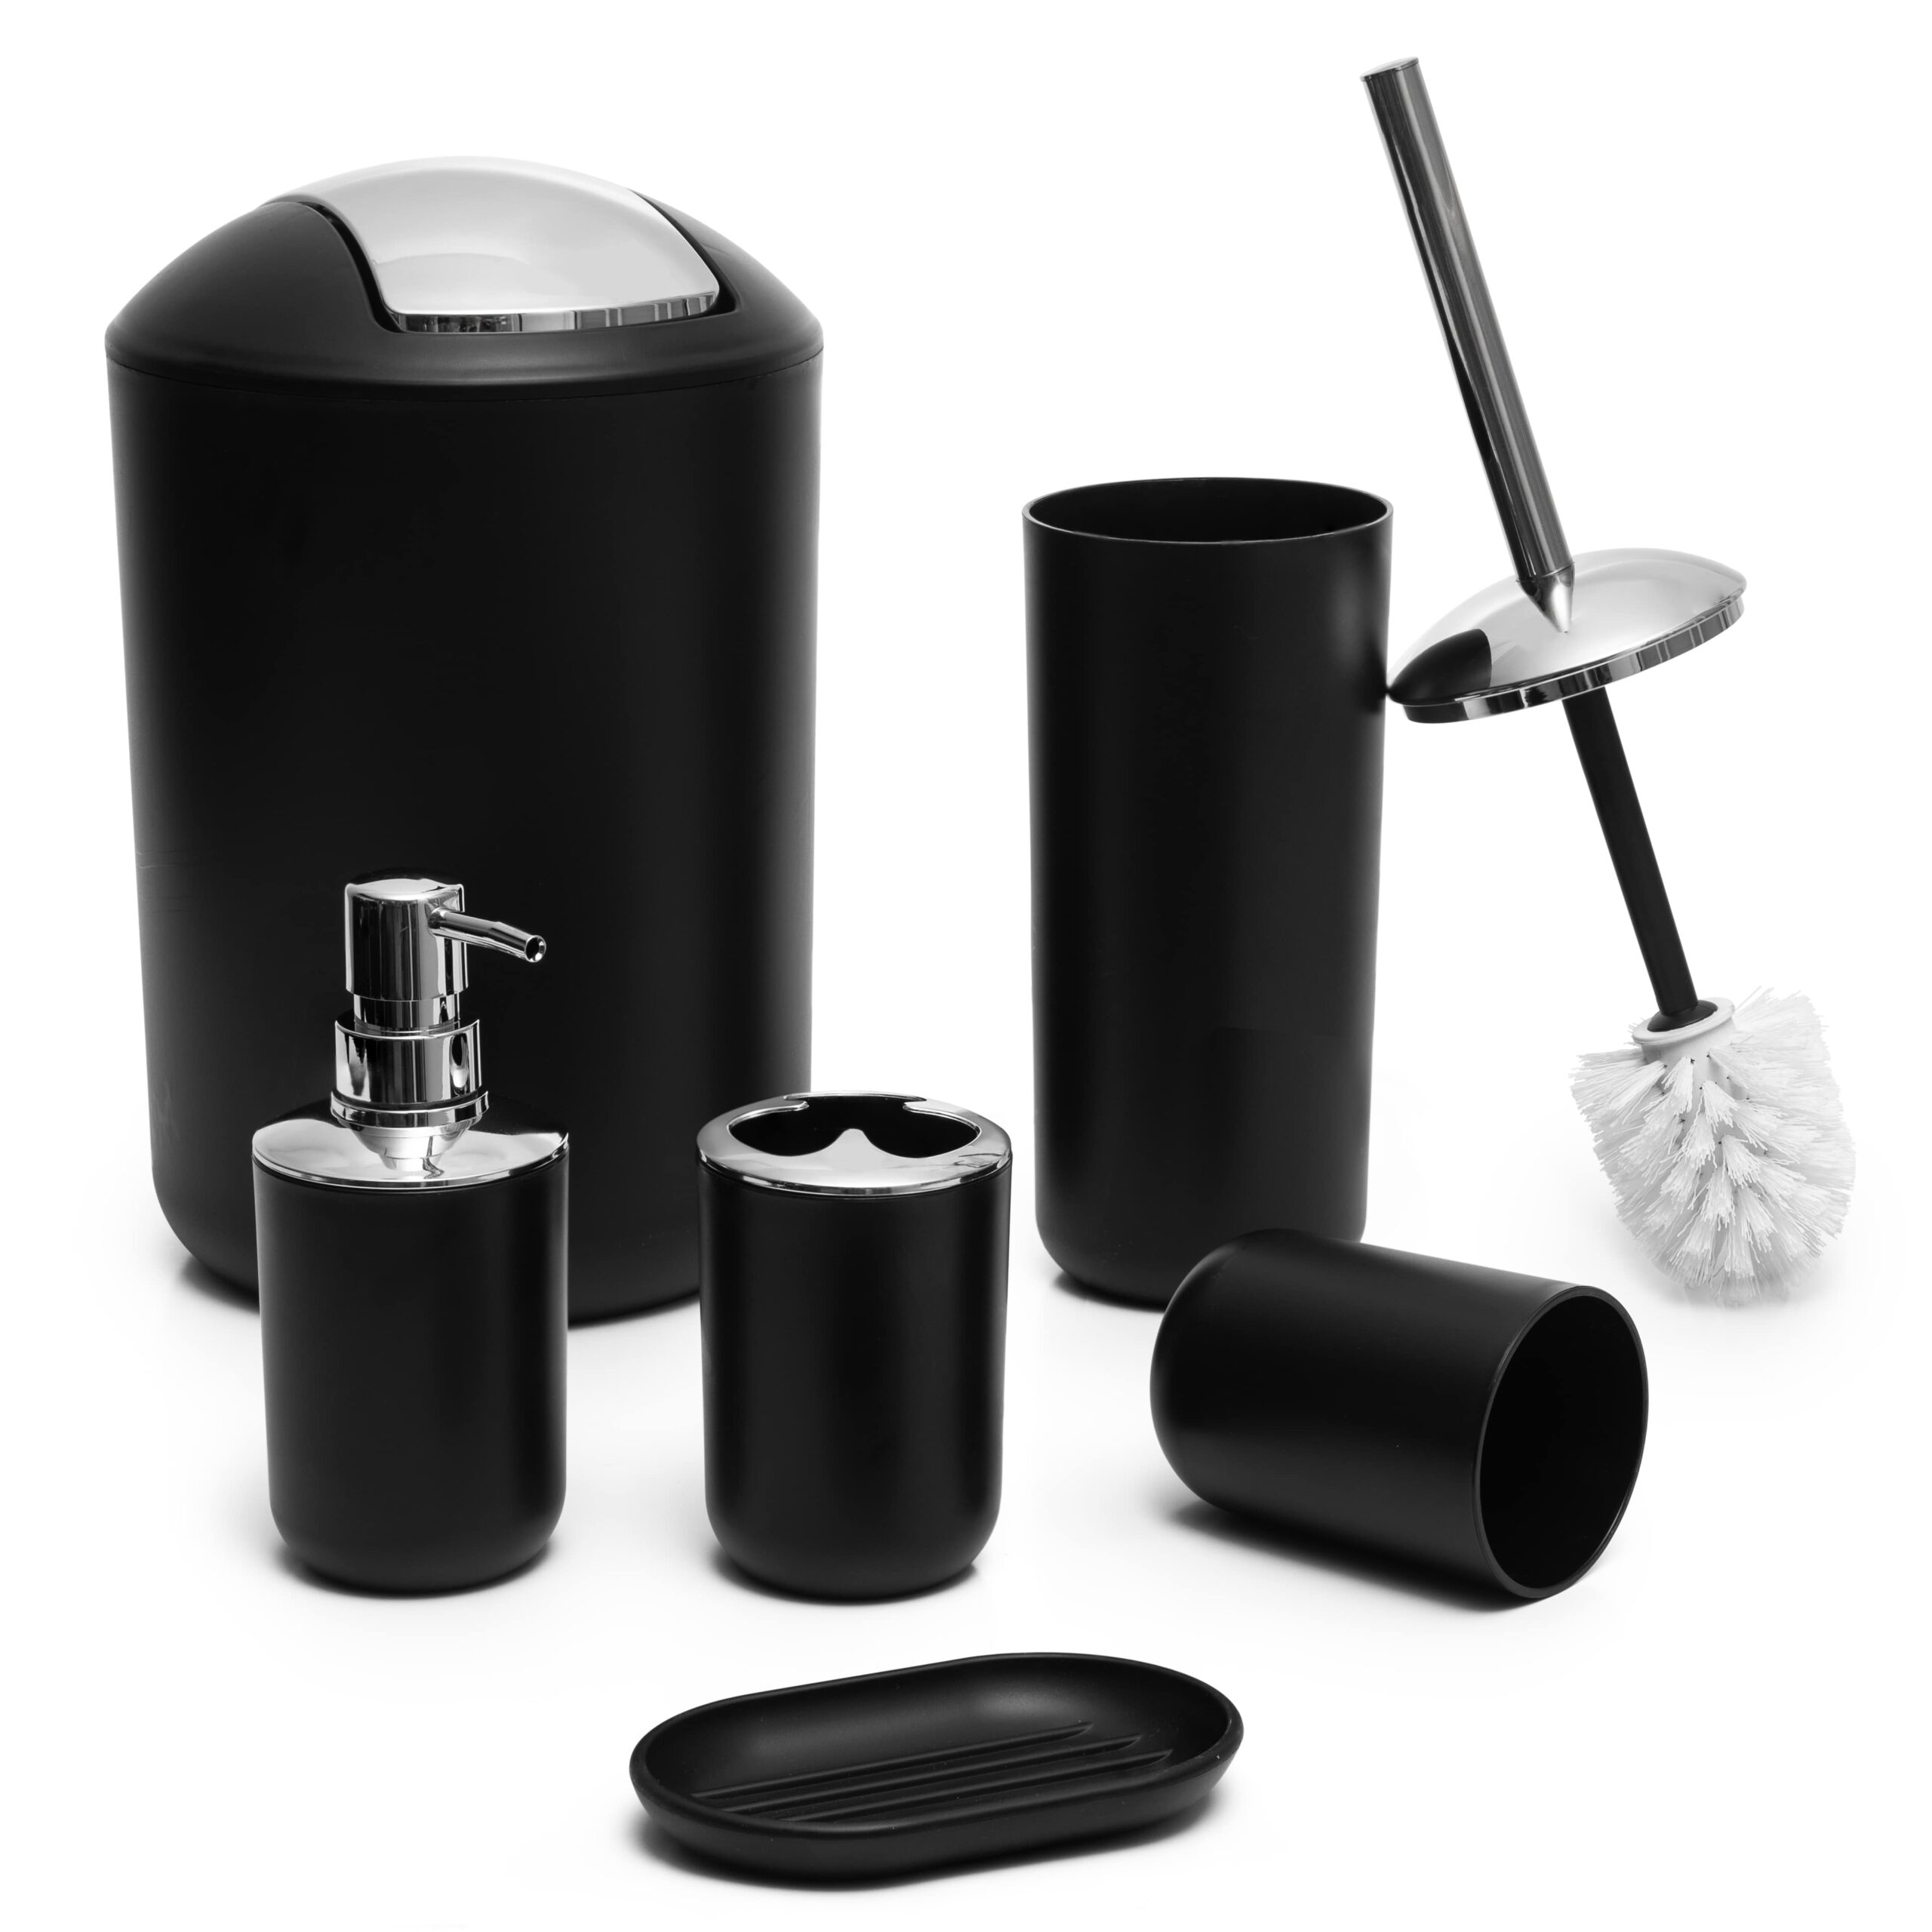 6Pcs Bathroom Accessories Set Toothbrush Holder Soap Dispenser Toilet Brush  Gift